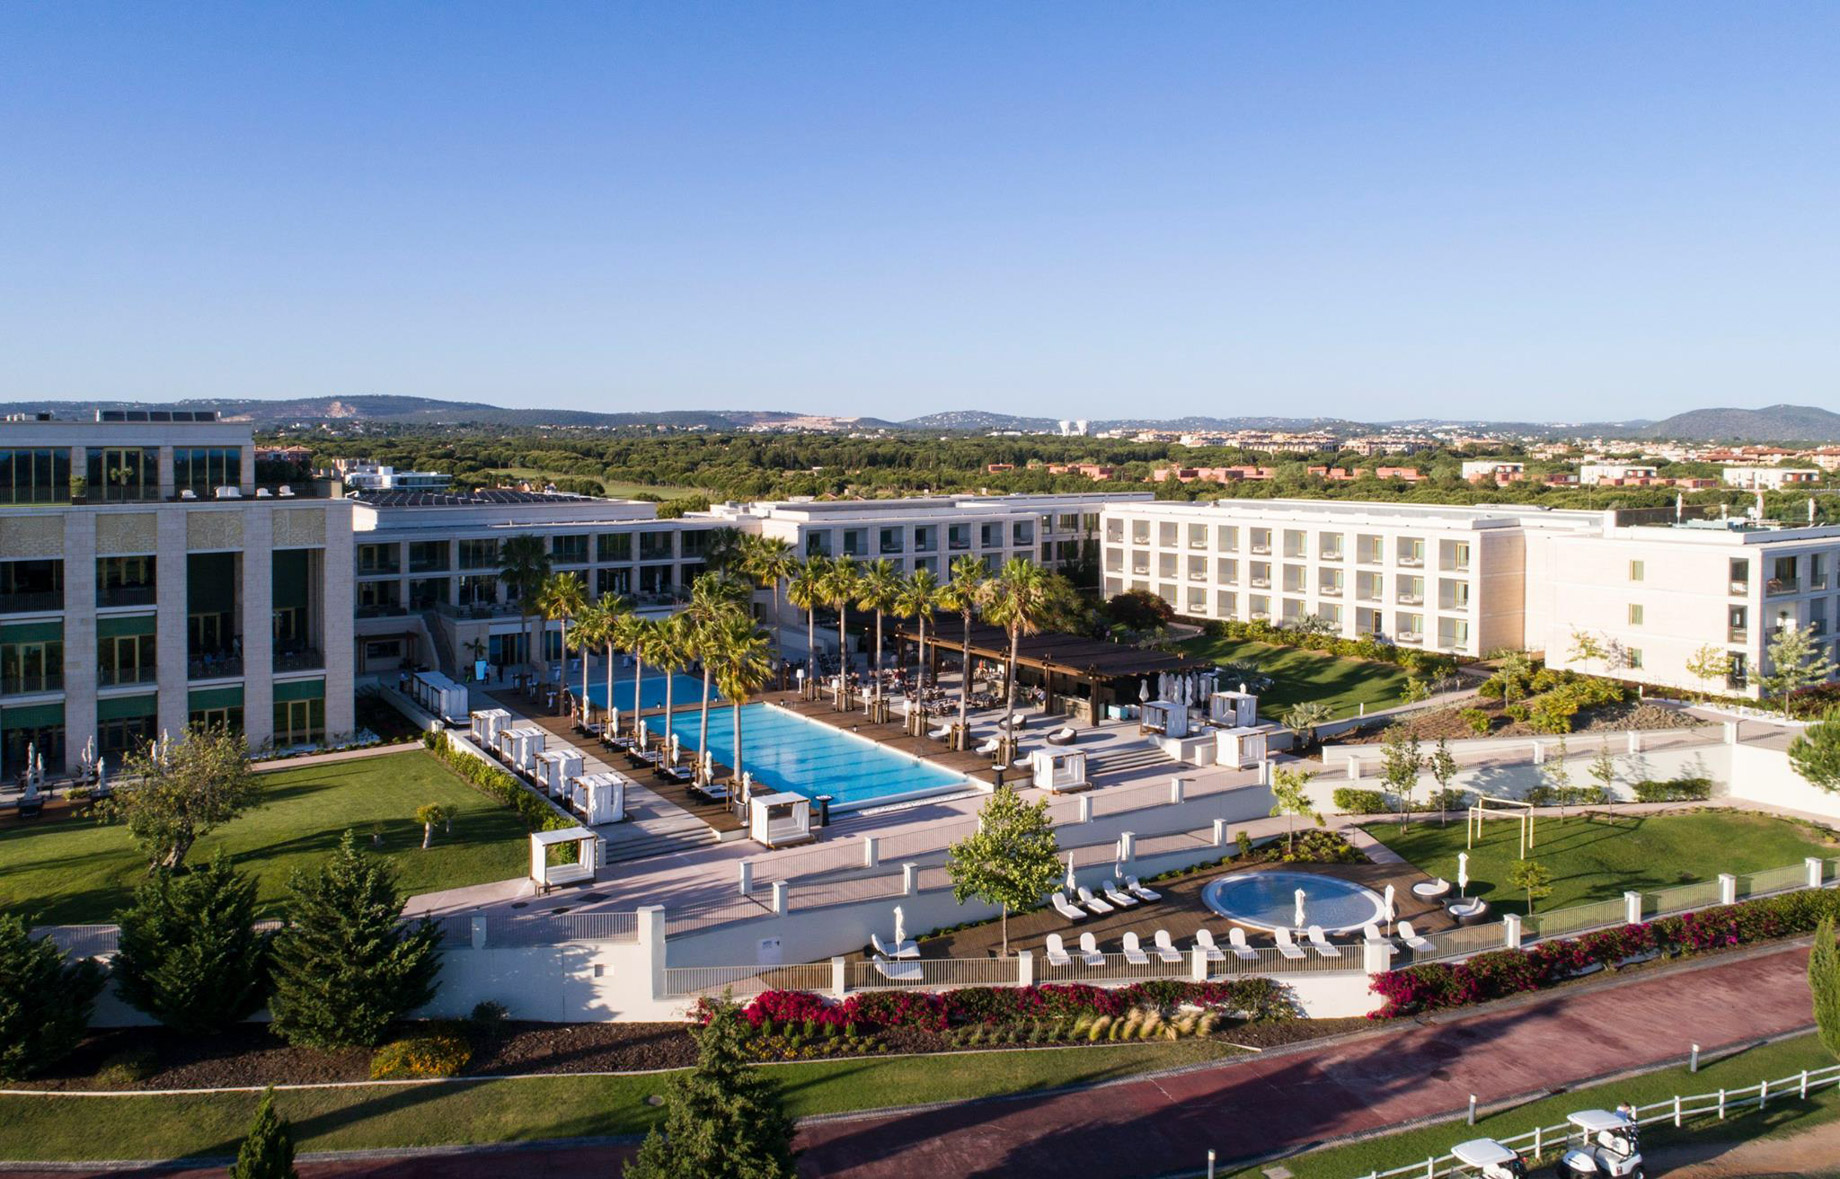 Anantara Vilamoura Algarve Resort – Portugal – Aerial View